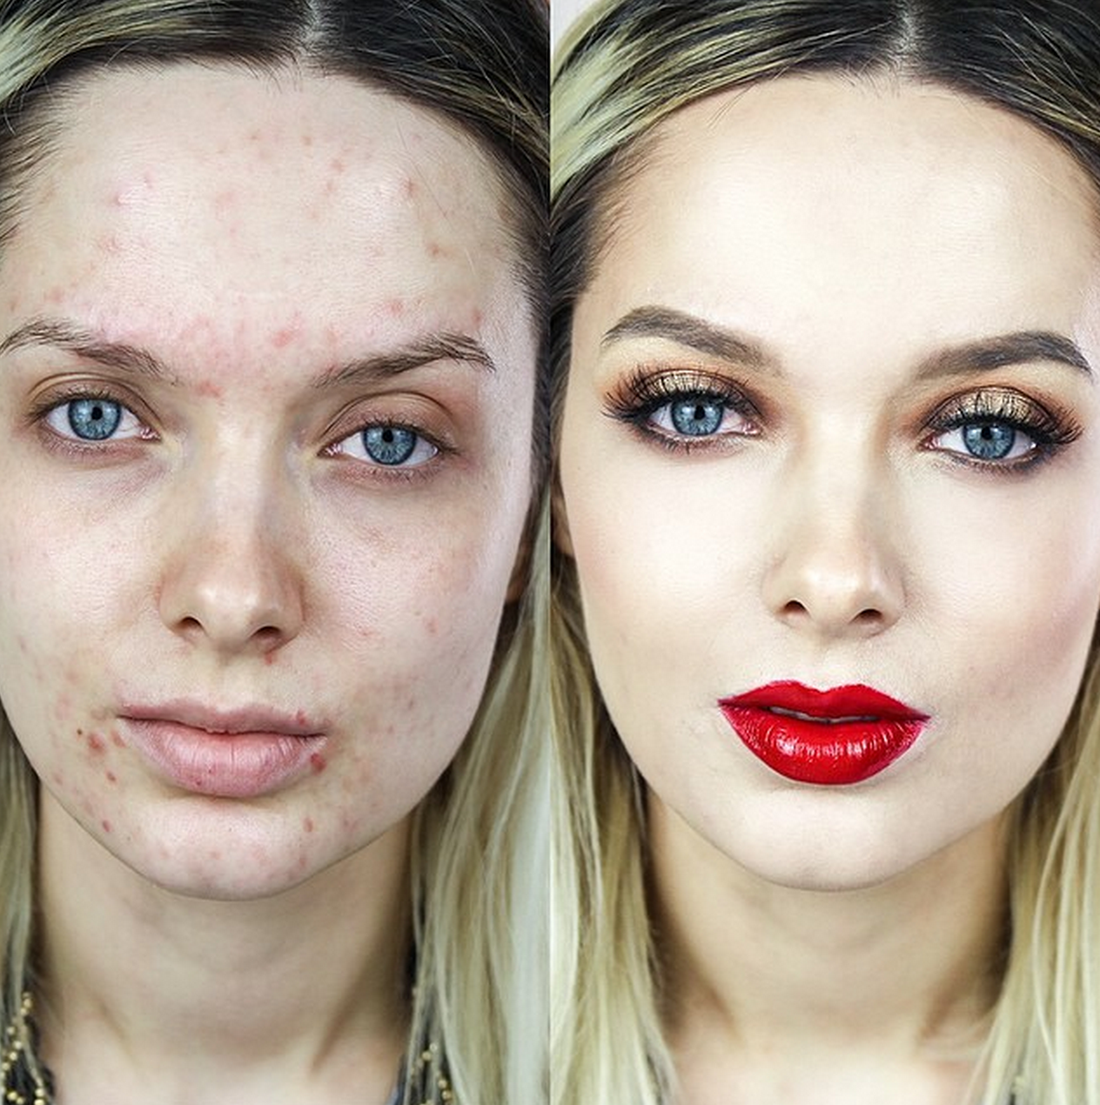 Макияж портит. Макияж на проблемной коже до и после. Девушки до и после макияжа. Девушка с проблемной кожей. Лицо девушки с проблемной кожей.